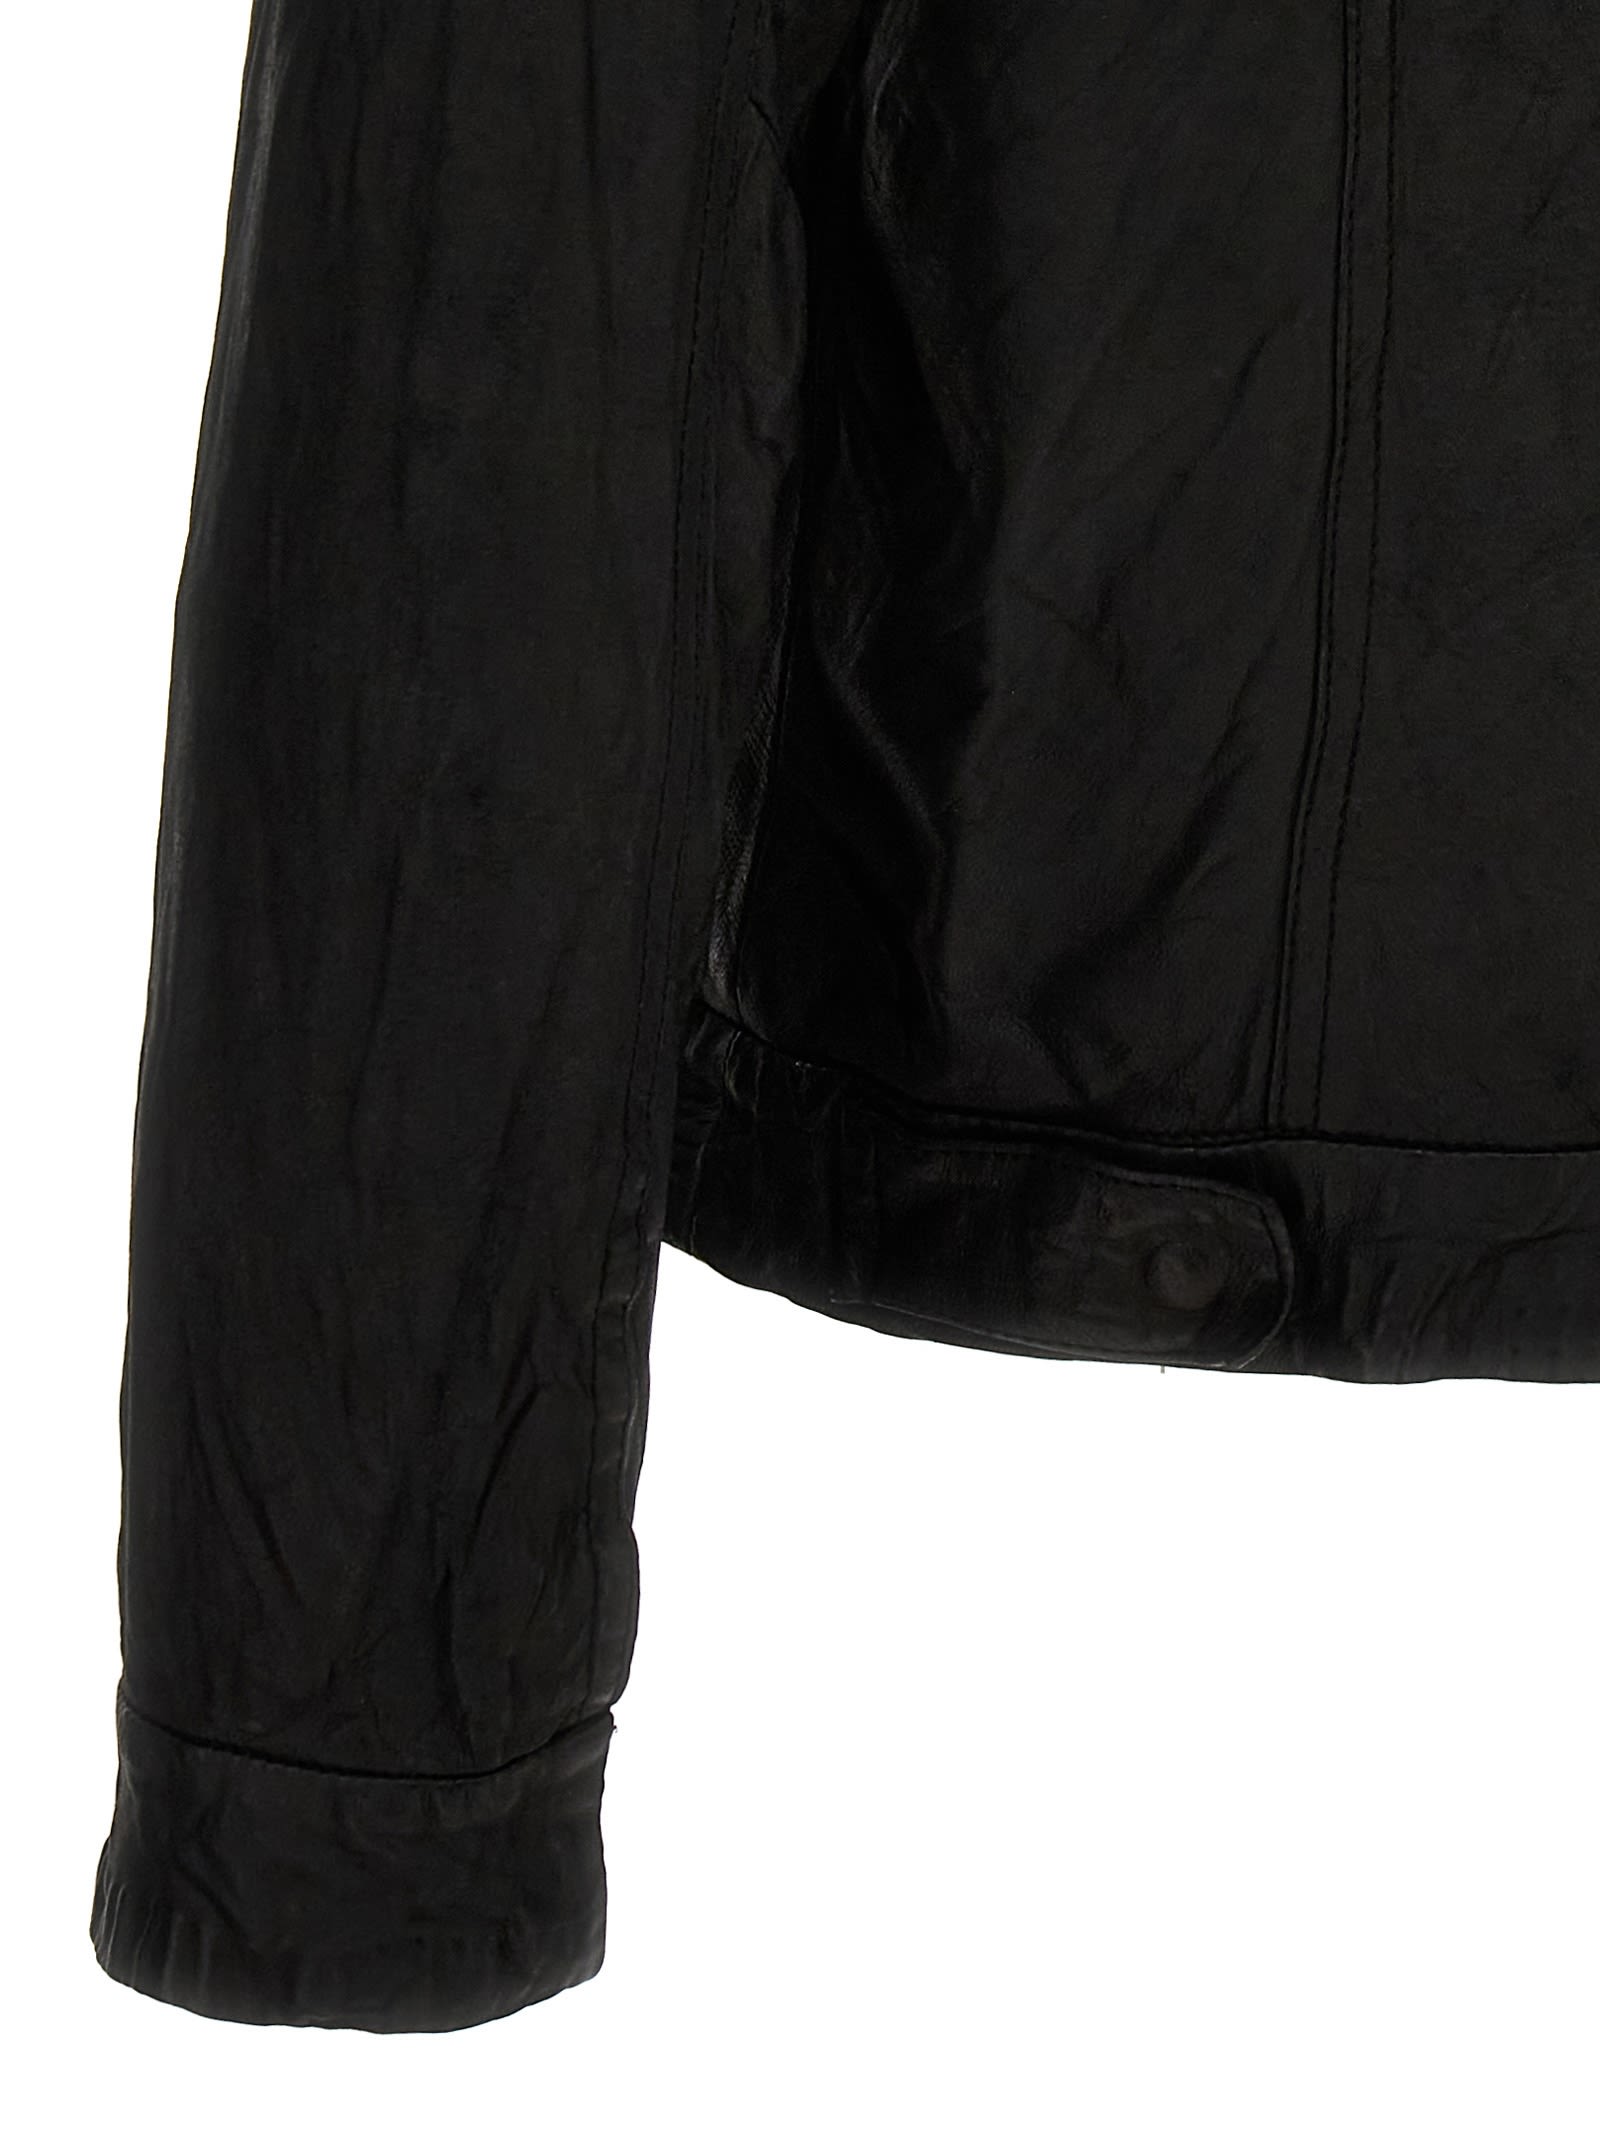 Shop Giorgio Brato Trucker Leather Jacket In Black